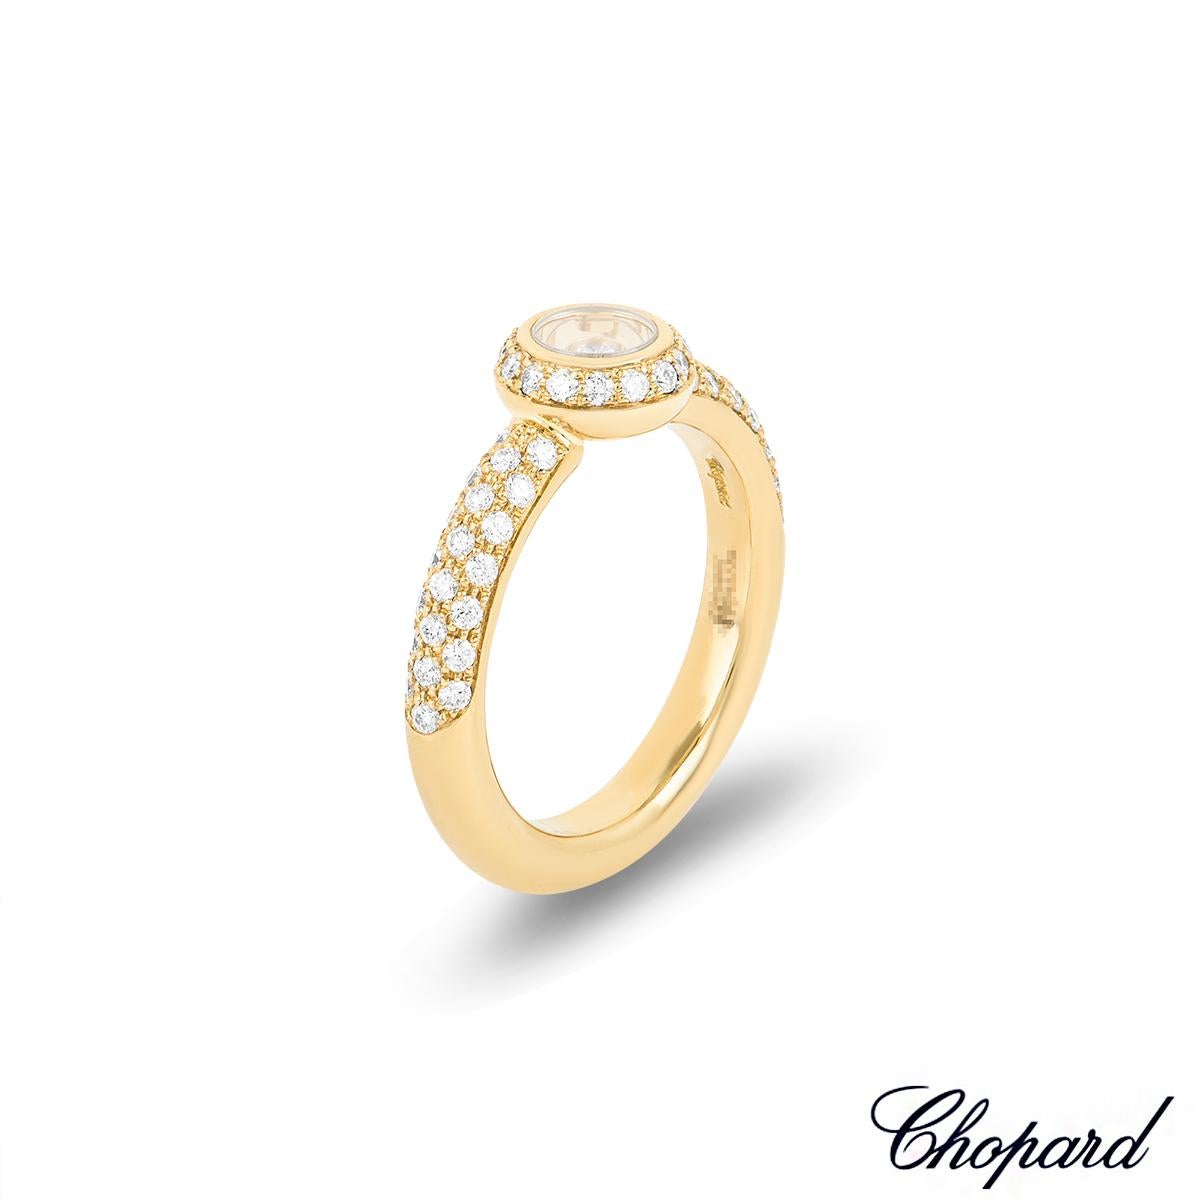 Ein funkelnder Happy-Diamonds-Ring aus 18 Karat Gelbgold von Chopard. In der Mitte des Rings befindet sich ein kreisförmiges Motiv, das von 15 runden Diamanten im Brillantschliff mit einem Gewicht von ca. 0,13 ct umrahmt wird. In der Mitte des